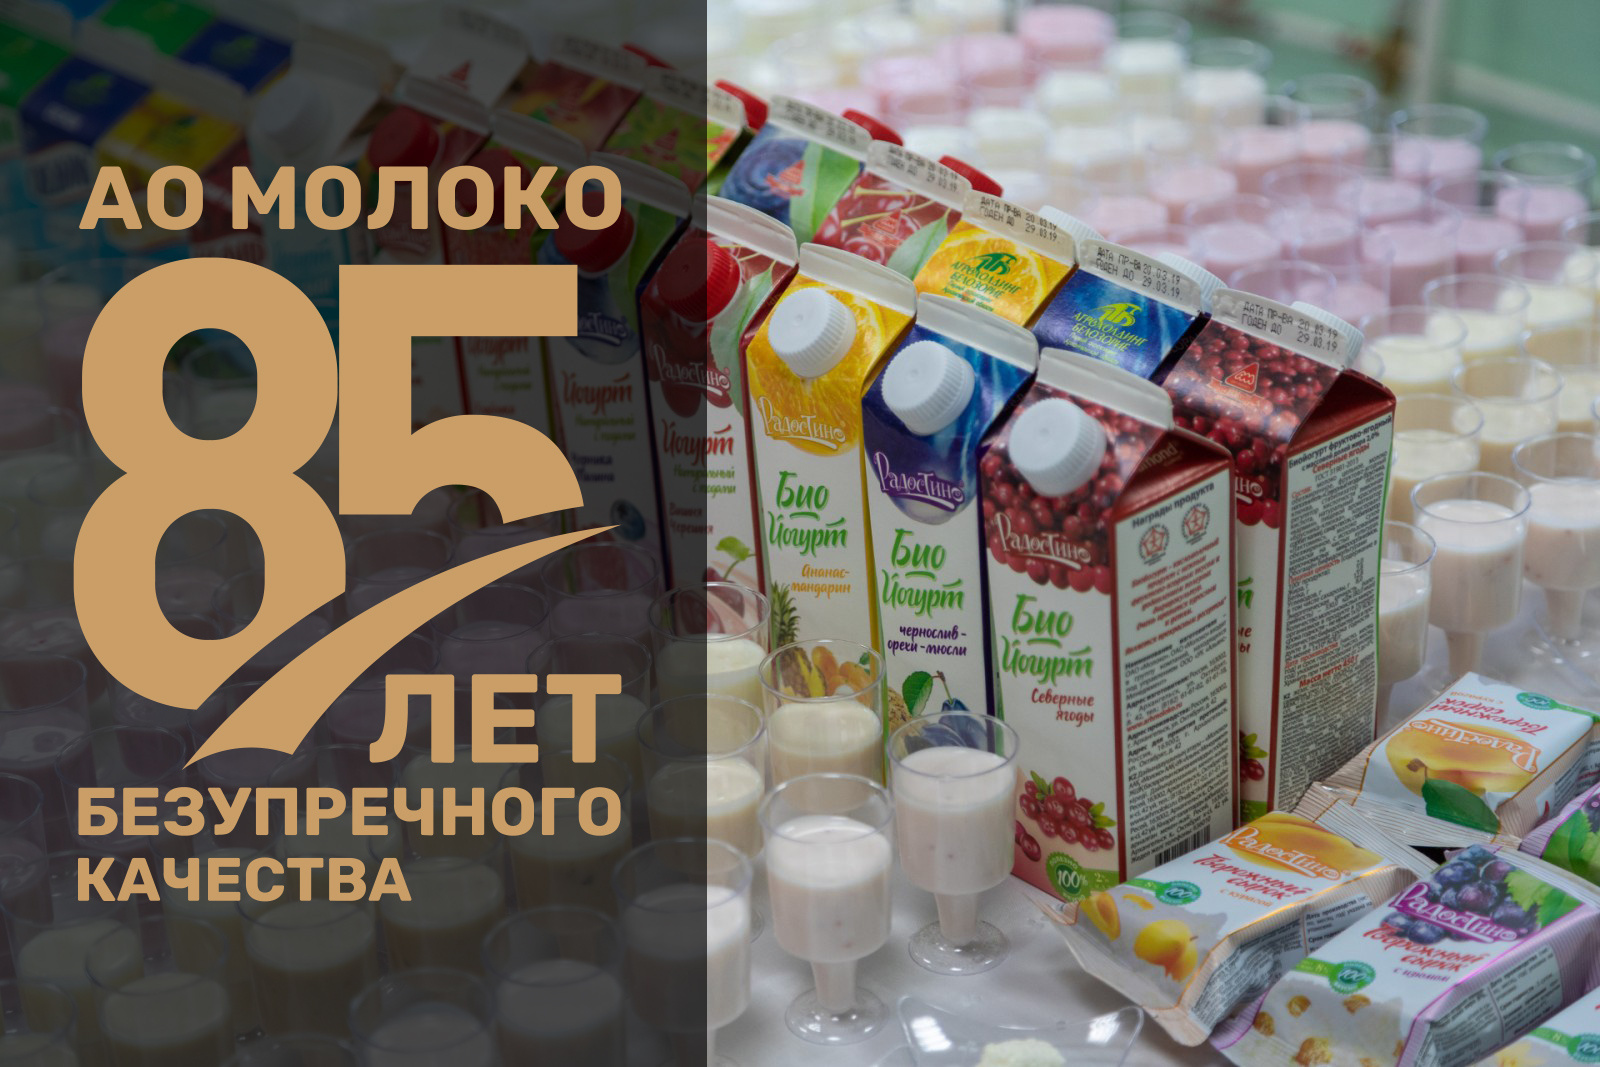 Накануне юбилея АО «Молоко» ставит перед собой большие планы по созданию новой продукции и расширению географии поставок